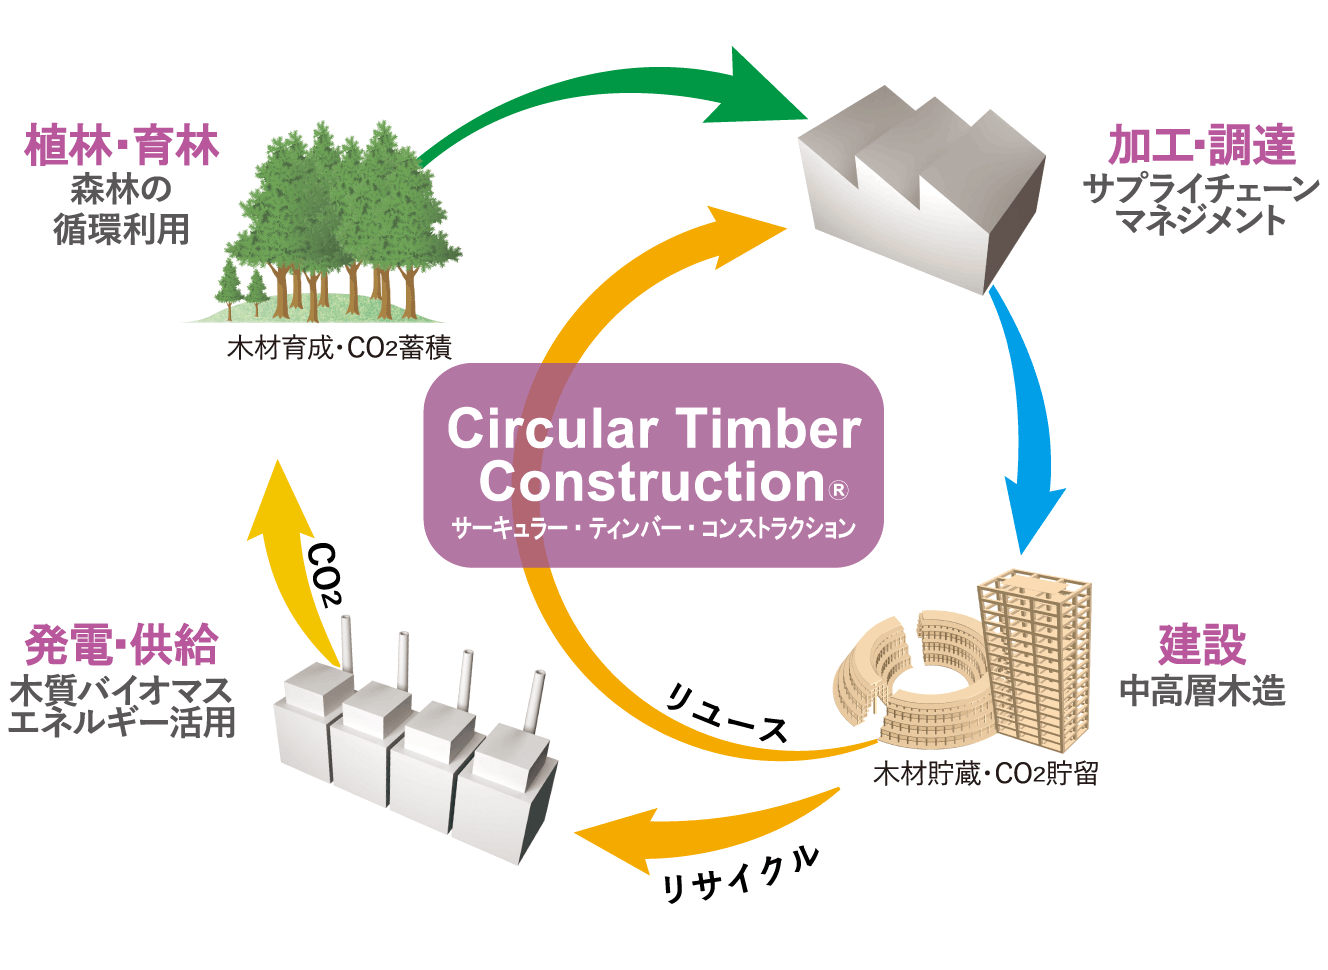 Circular Timber Construction概念図